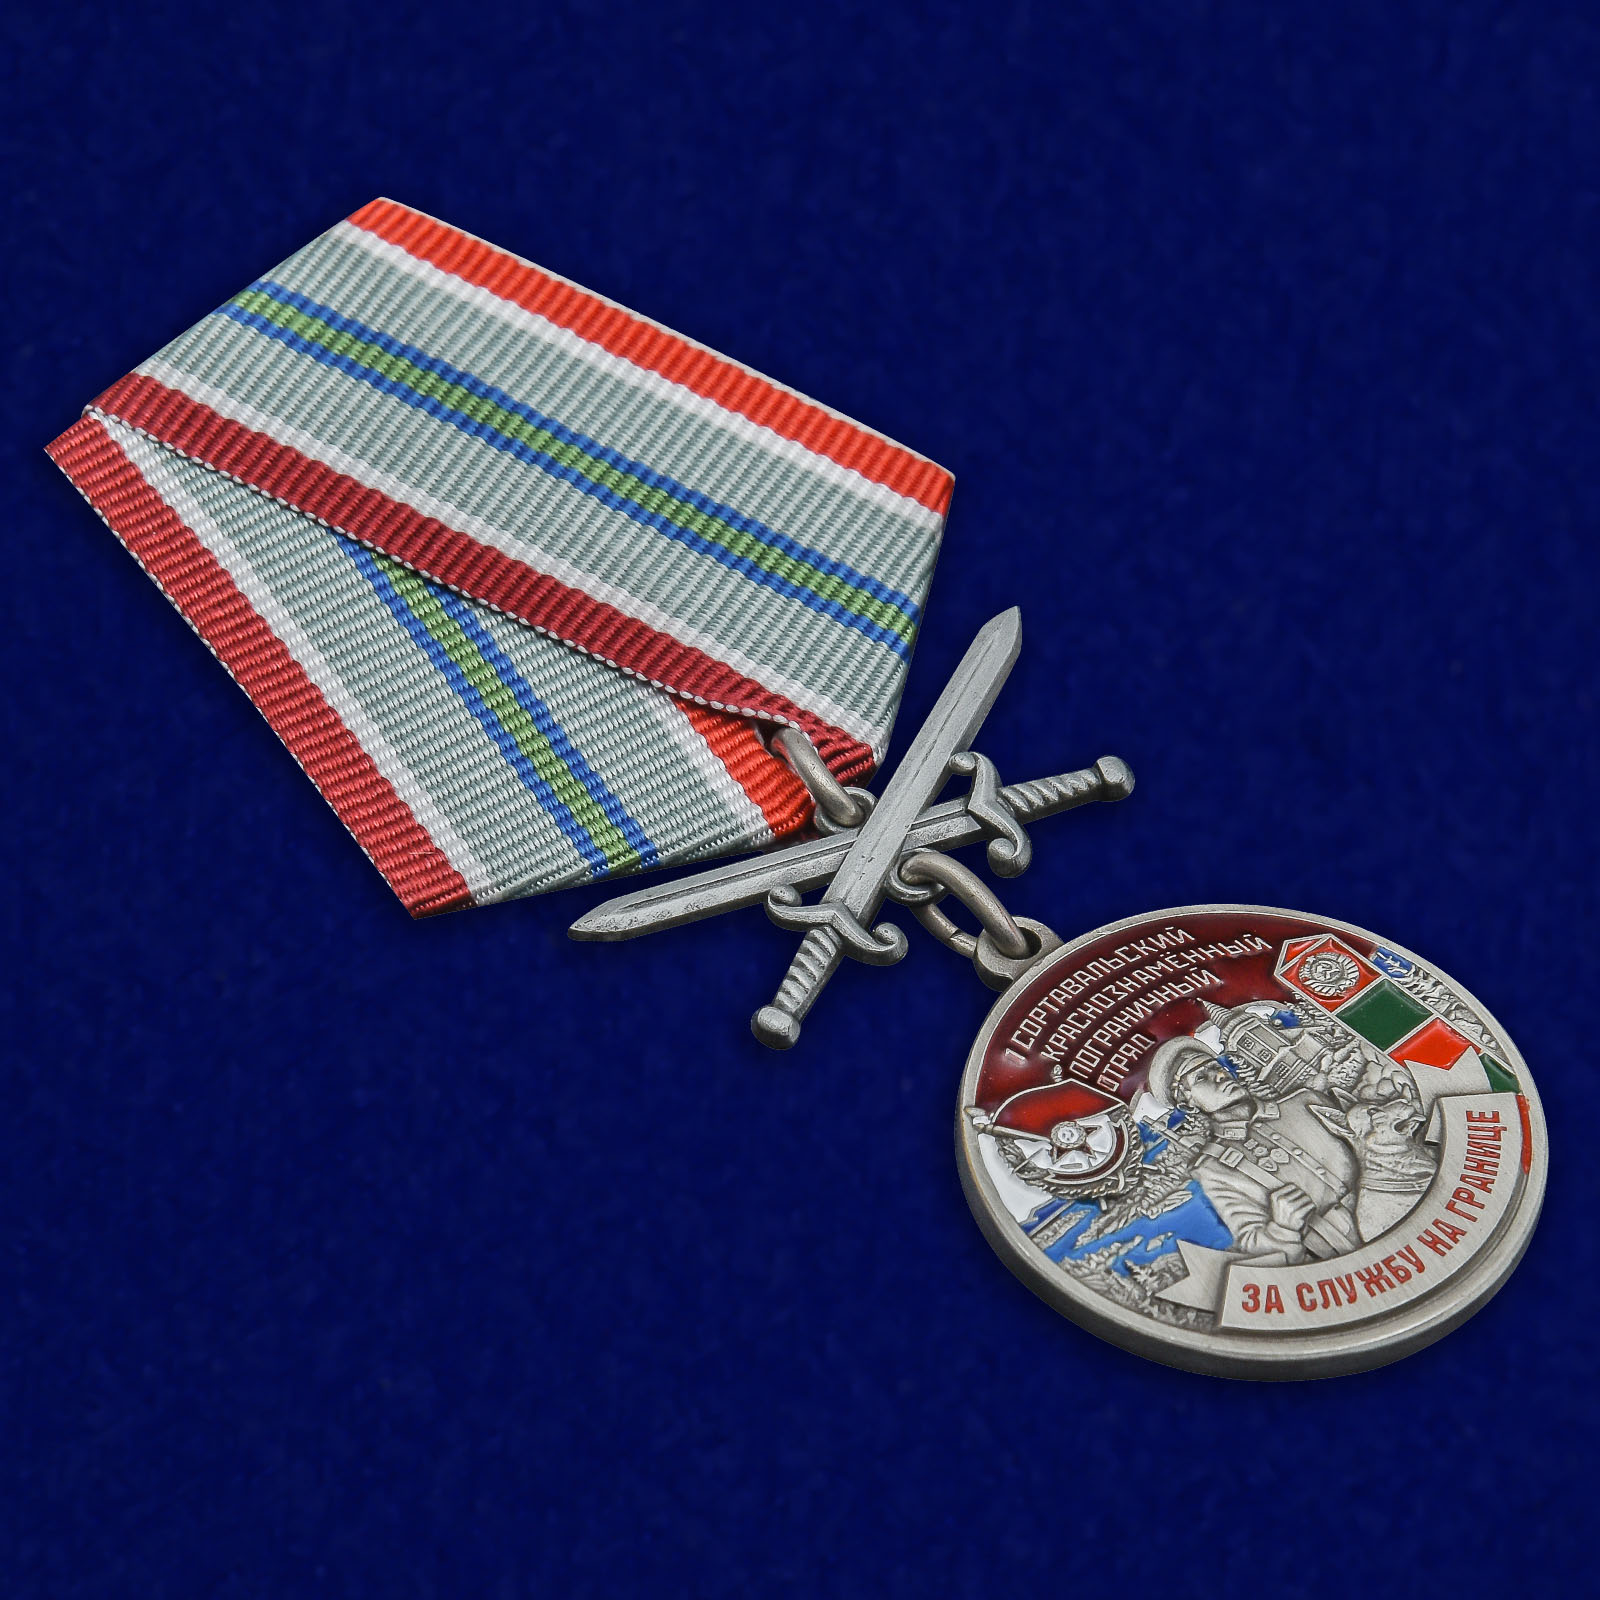 Купить медаль "За службу на границе" (1 Сортавальский ПогО)